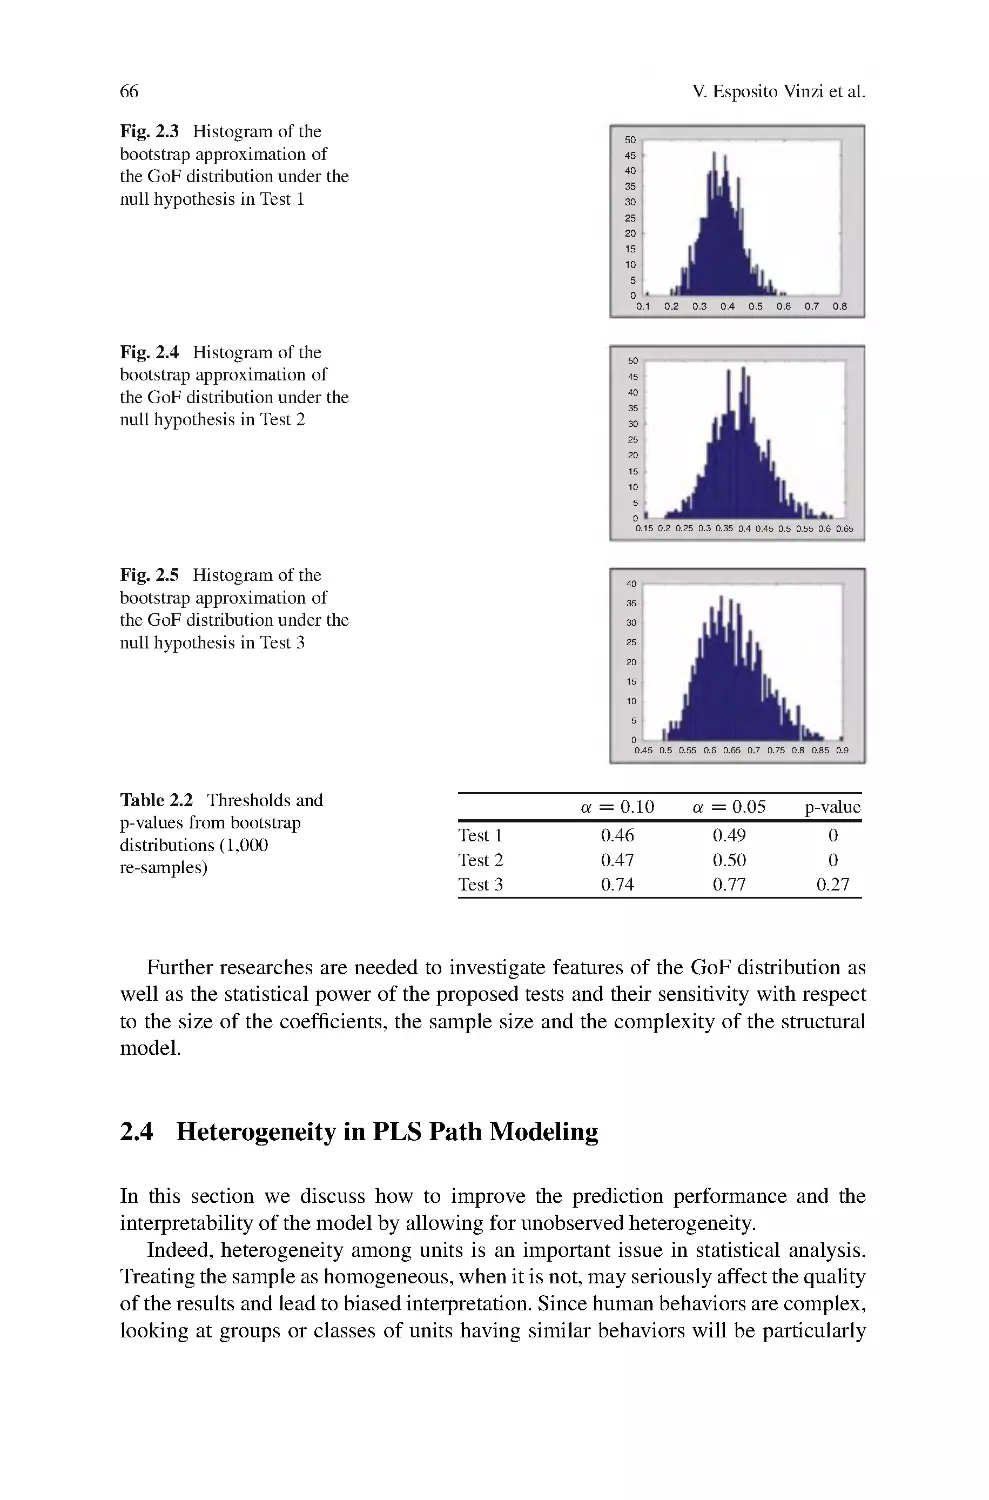 2.4 Heterogeneity in PLS Path Modeling